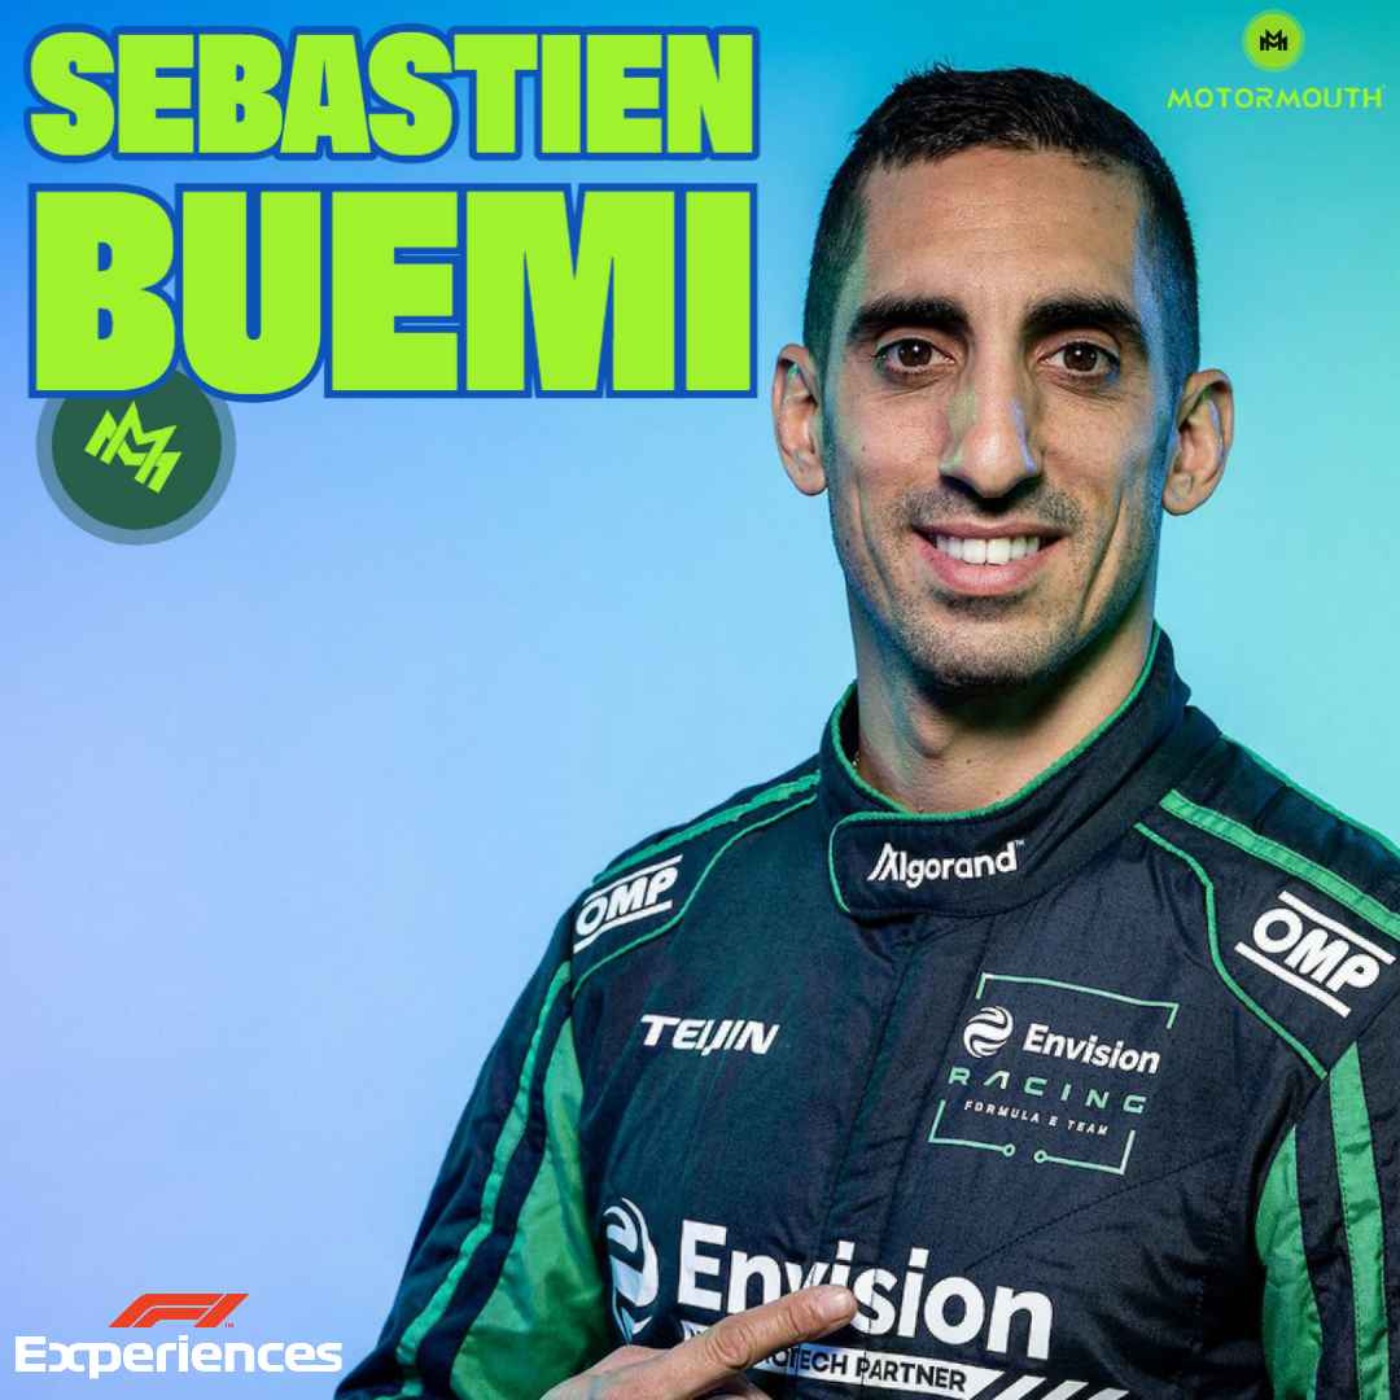 Ep 137 with Sebastien Buemi (Formula E driver)